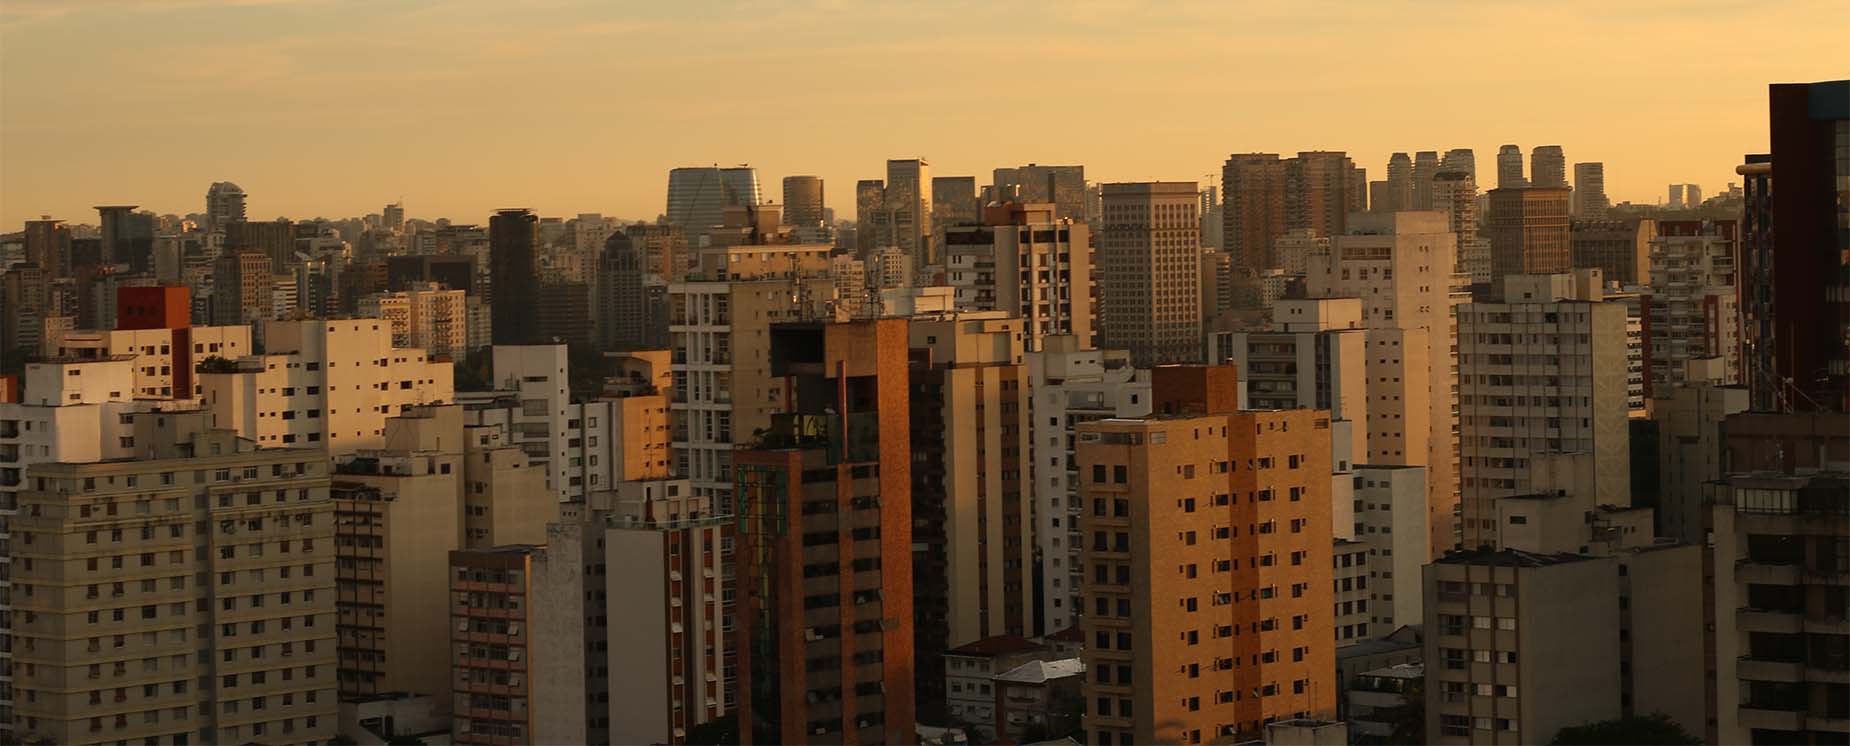 Um passeio por locais secretos de São Paulo